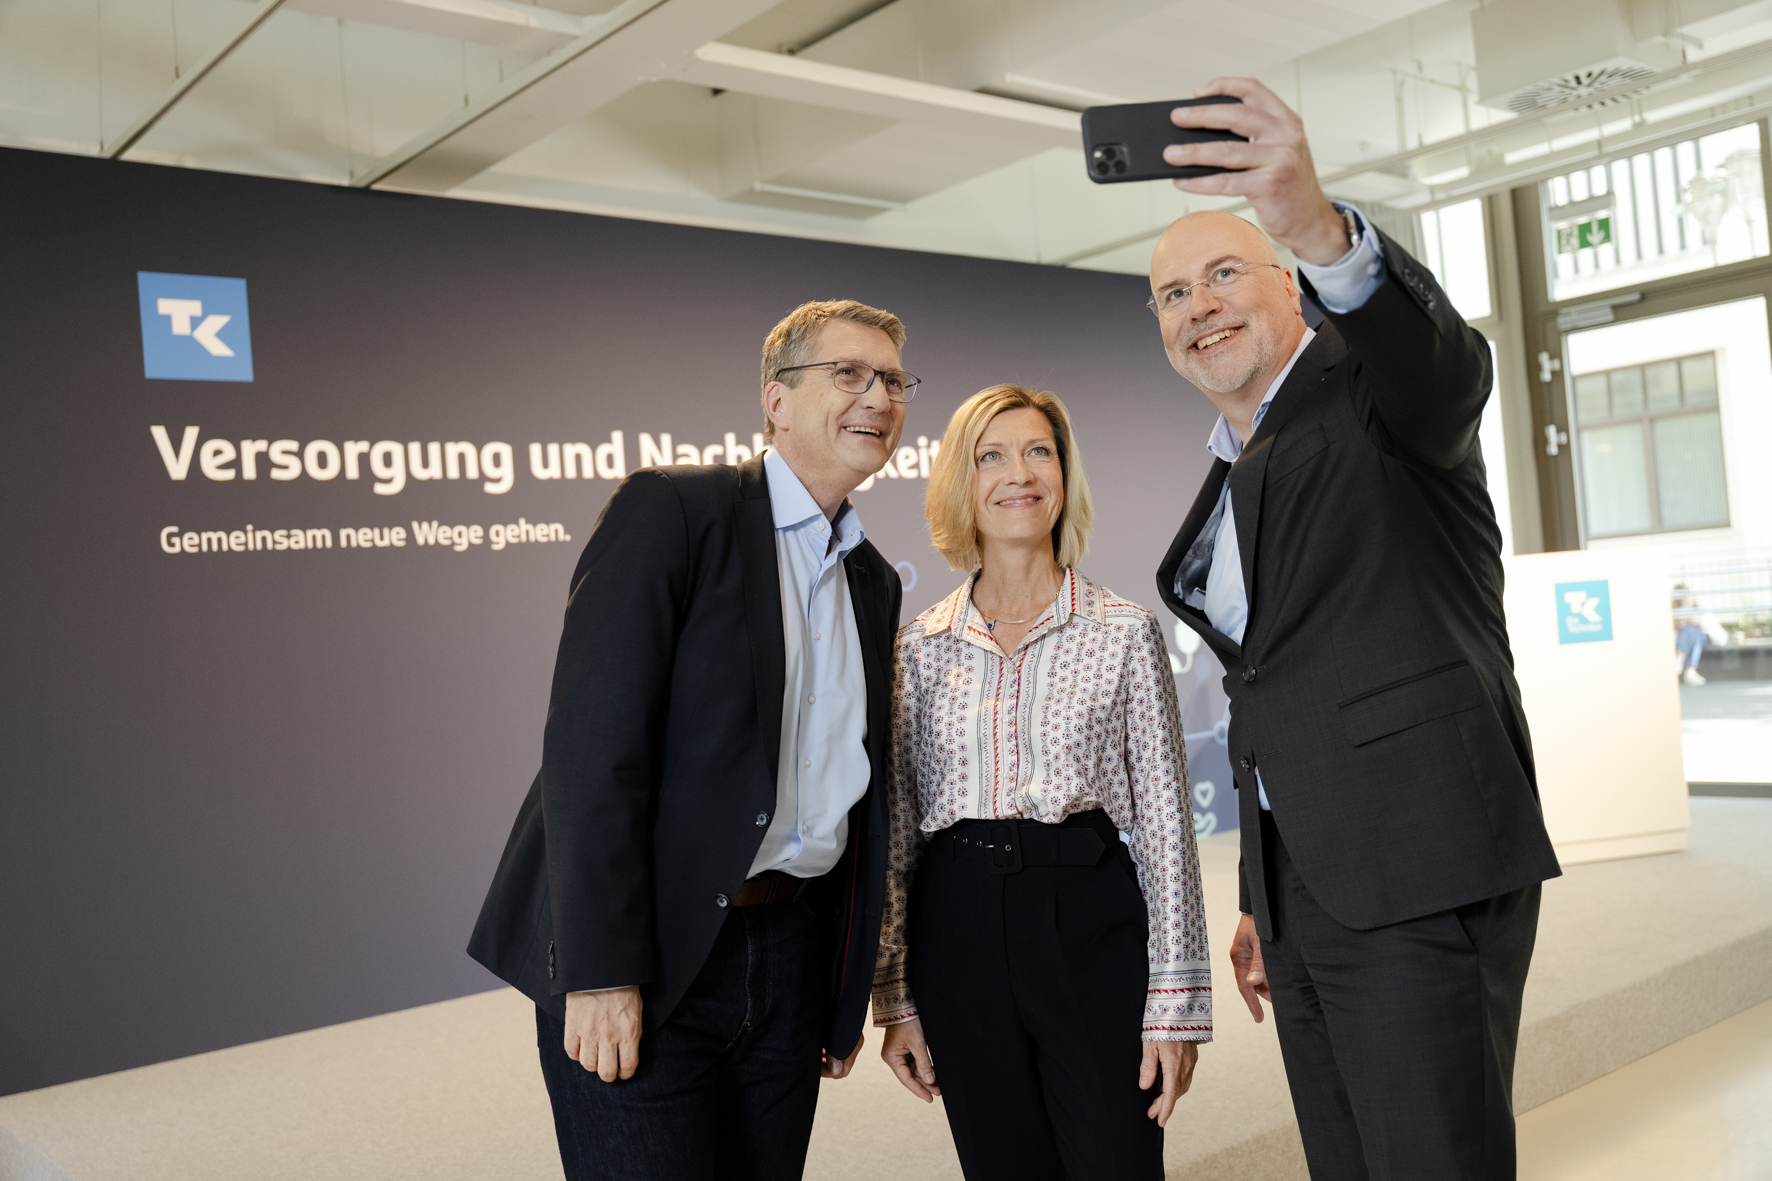 Gute Laune beim Selfie vor dem gemeinsamen Auftritt: Thomas Ballast (TK), Anne Klemm (BKK-DV) und Johannes Bauernfeind (AOK BW)(v.l.n.r.).